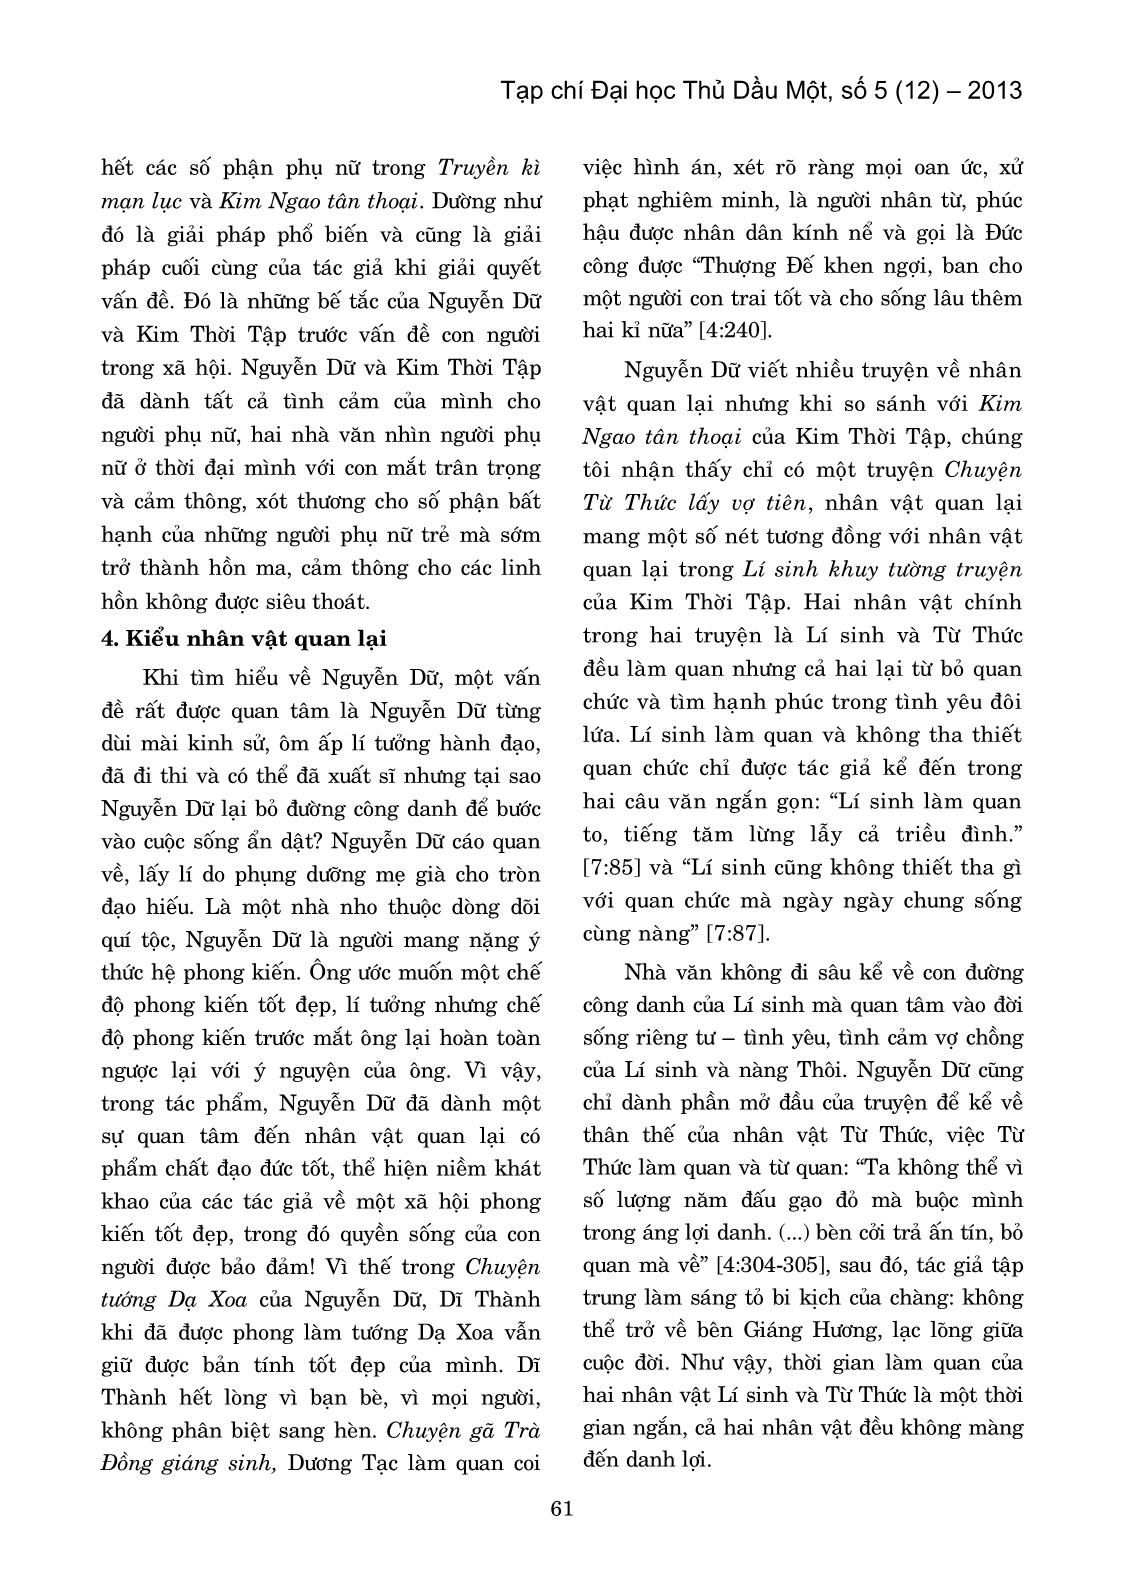 Một số tương đồng về các kiểu nhân vật trong Kim Ngao Tân Thoại (Kim Thời tập) và Truyền Kì Mạn Lục (Nguyễn Dữ) trang 5